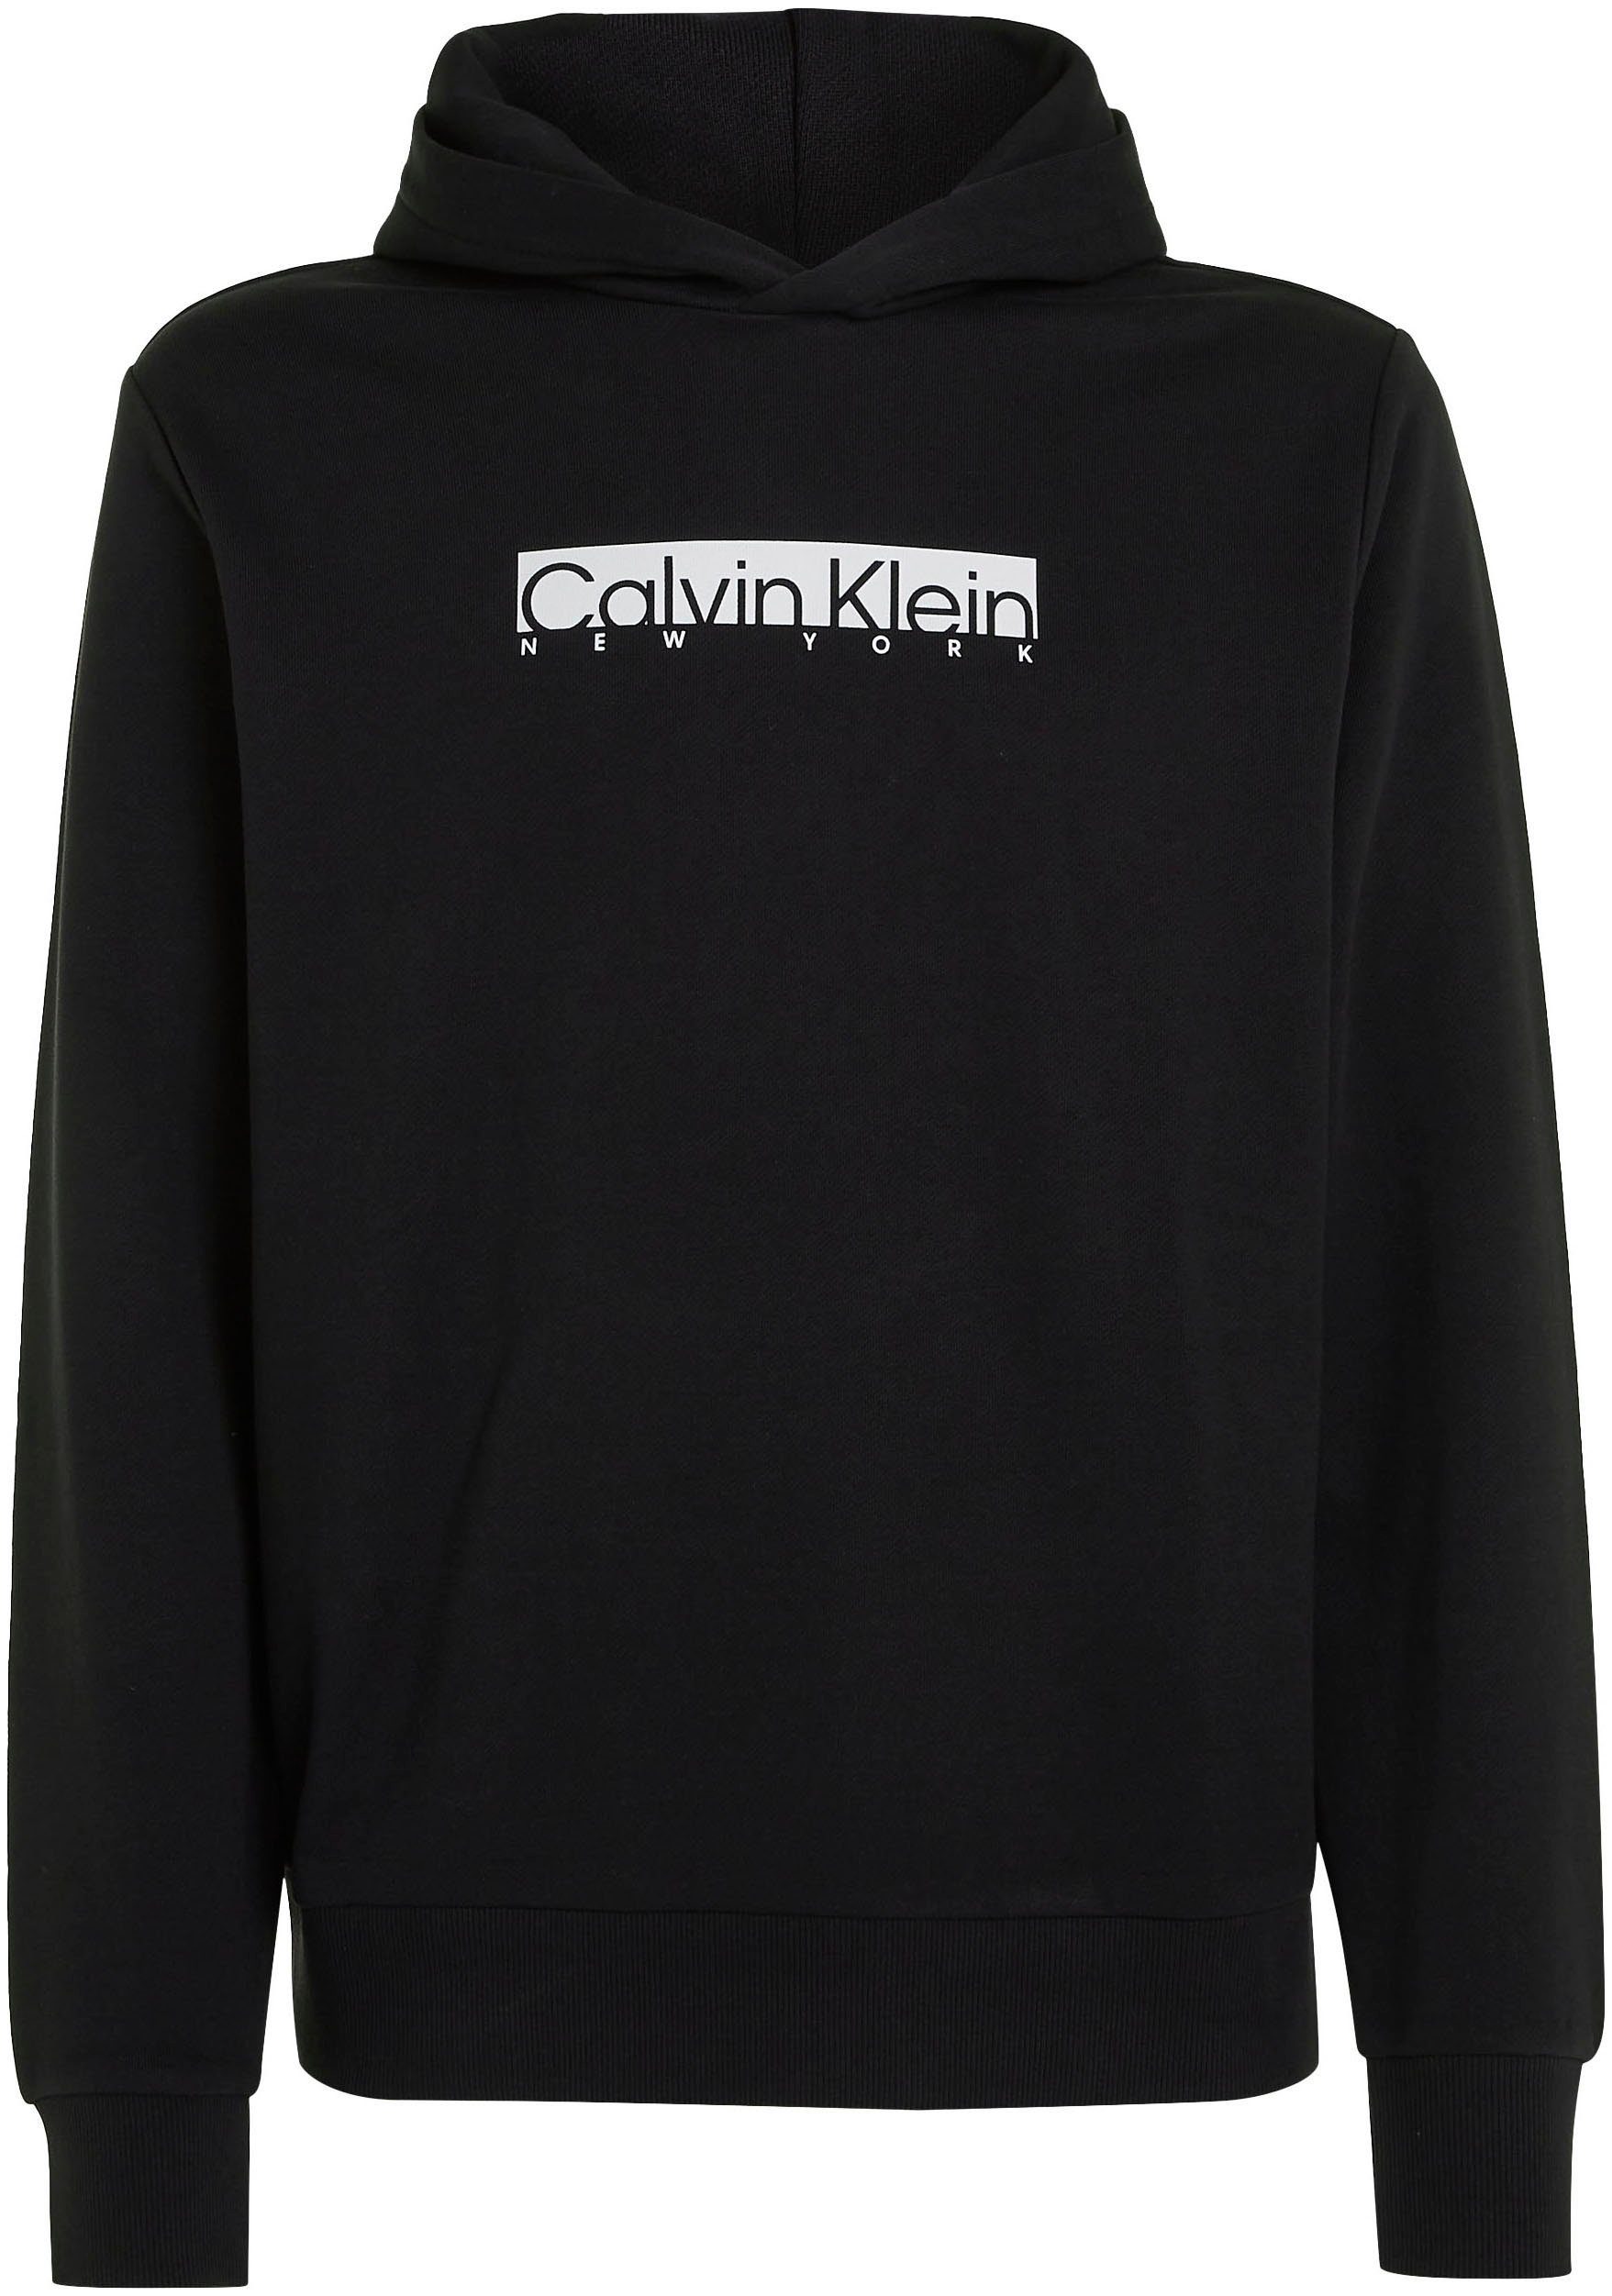 Print CK New Klein Calvin York schwarz Kapuzensweatshirt mit